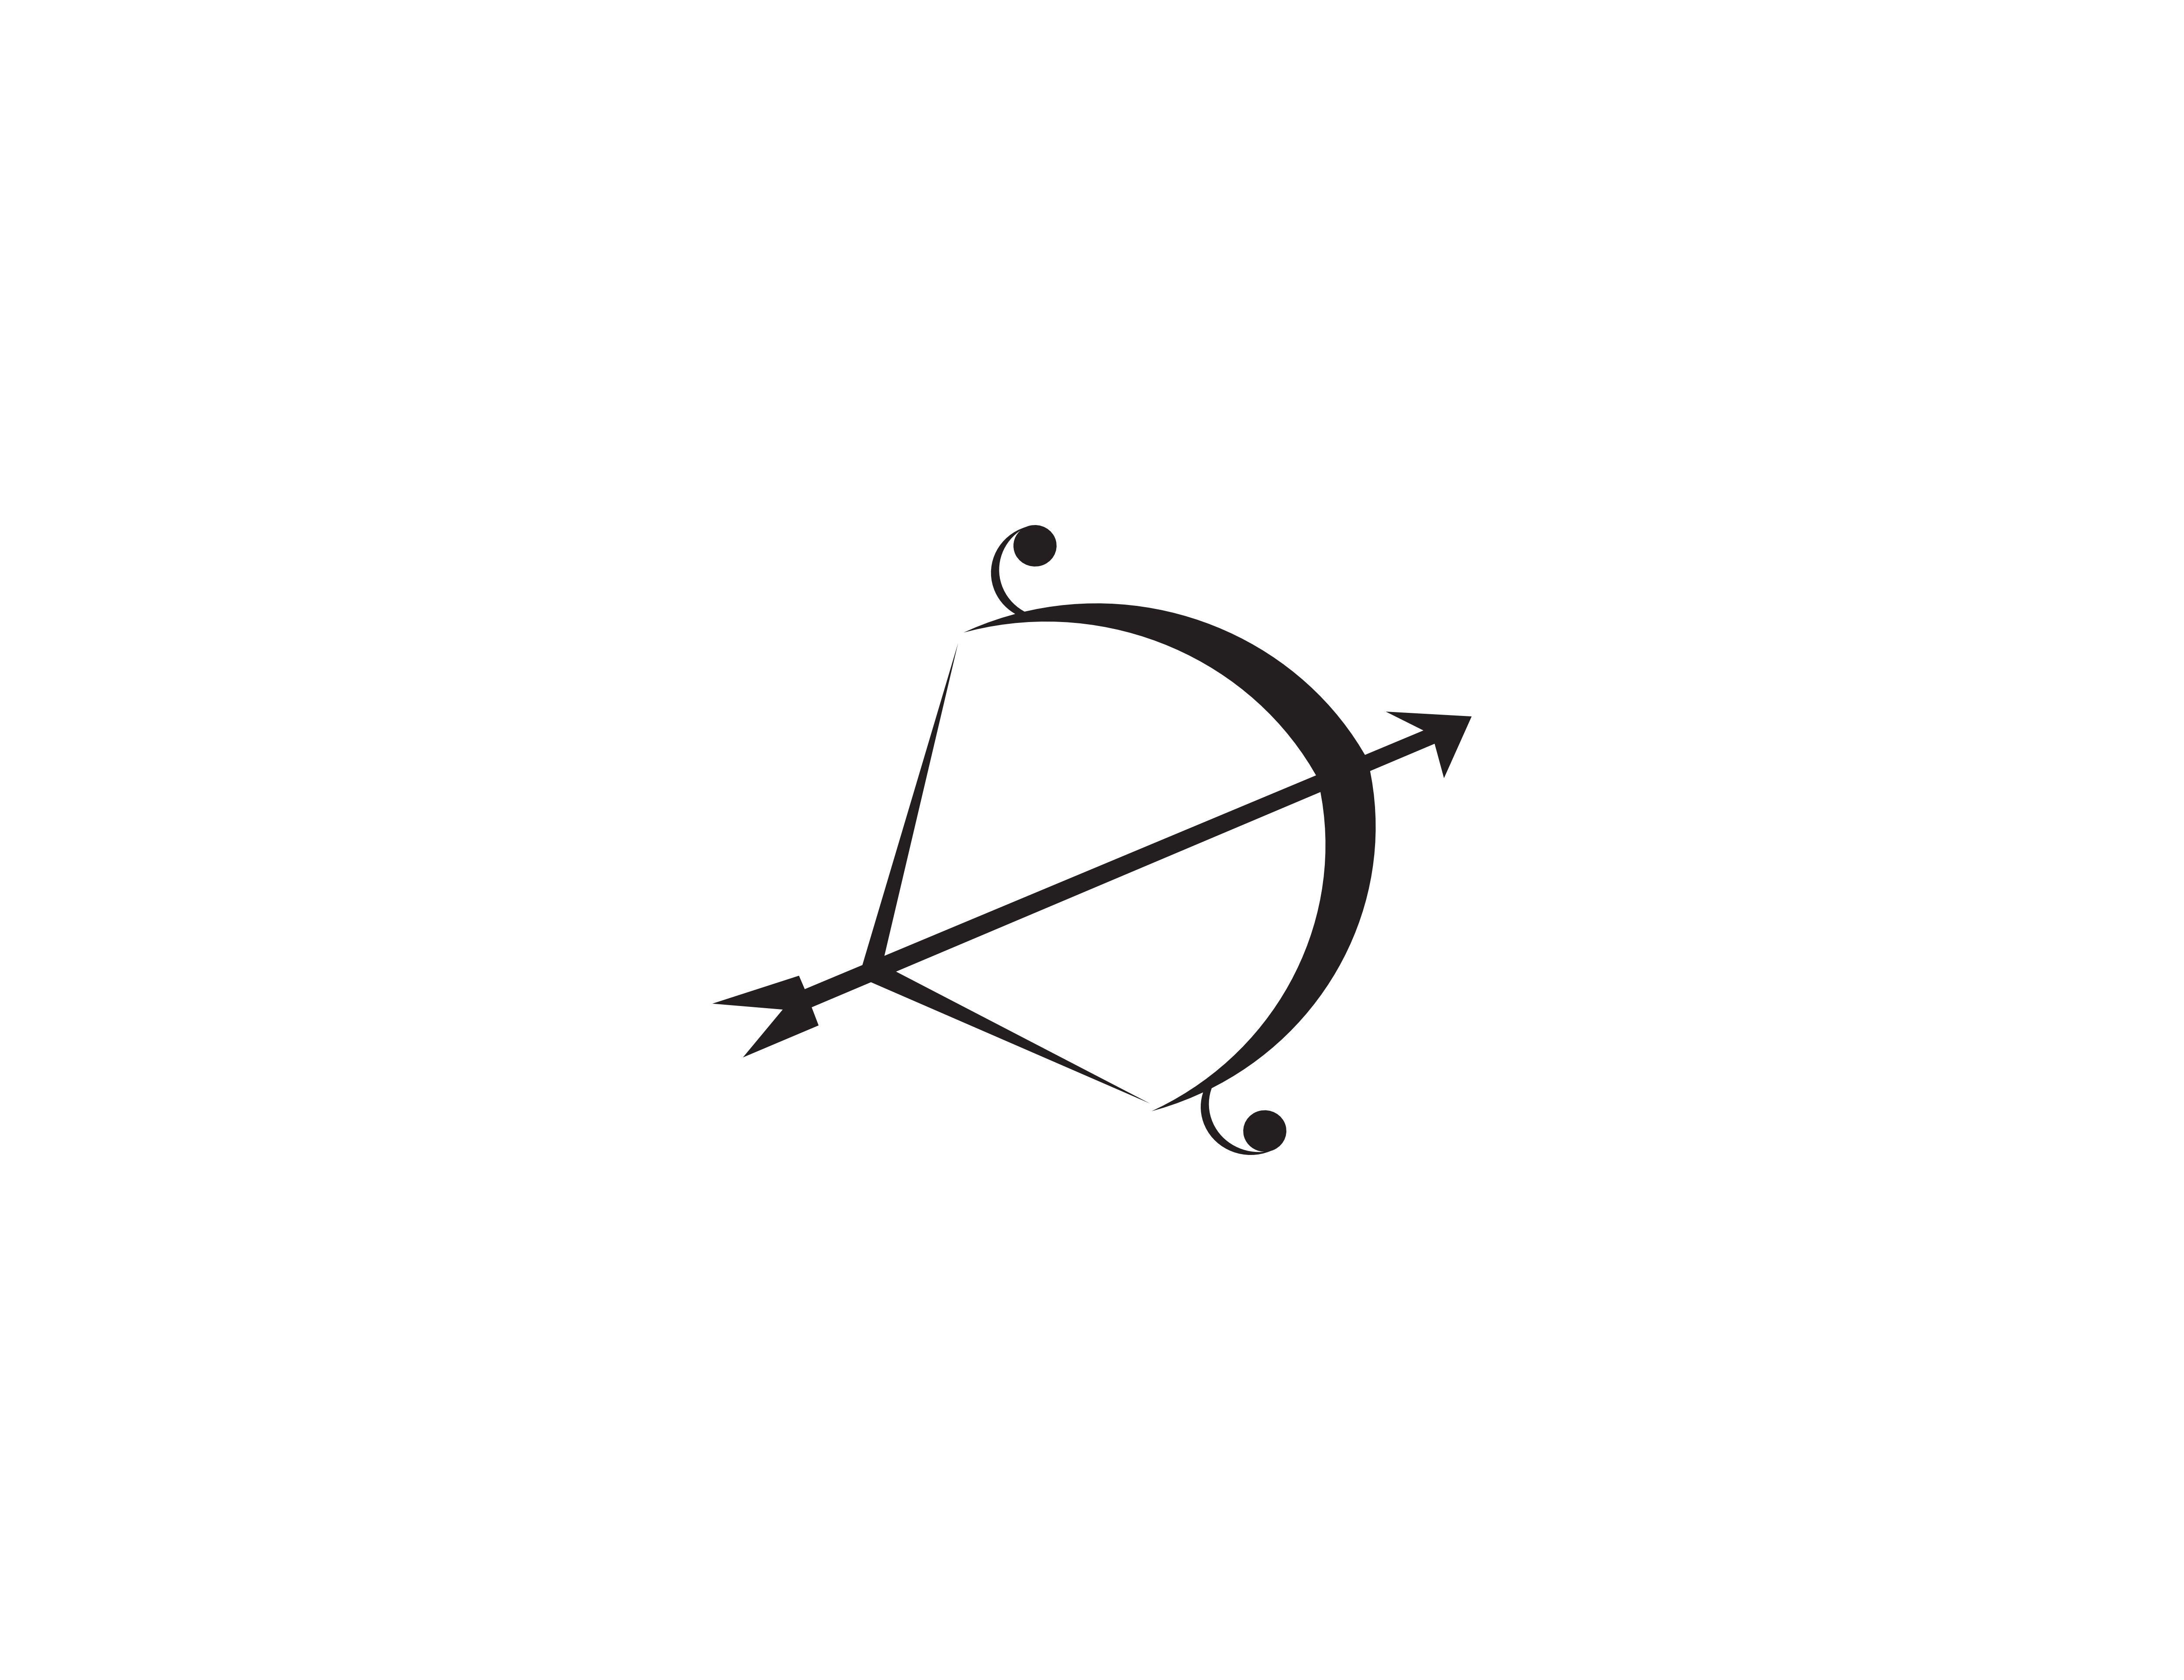 Archery Logo - Archery logo